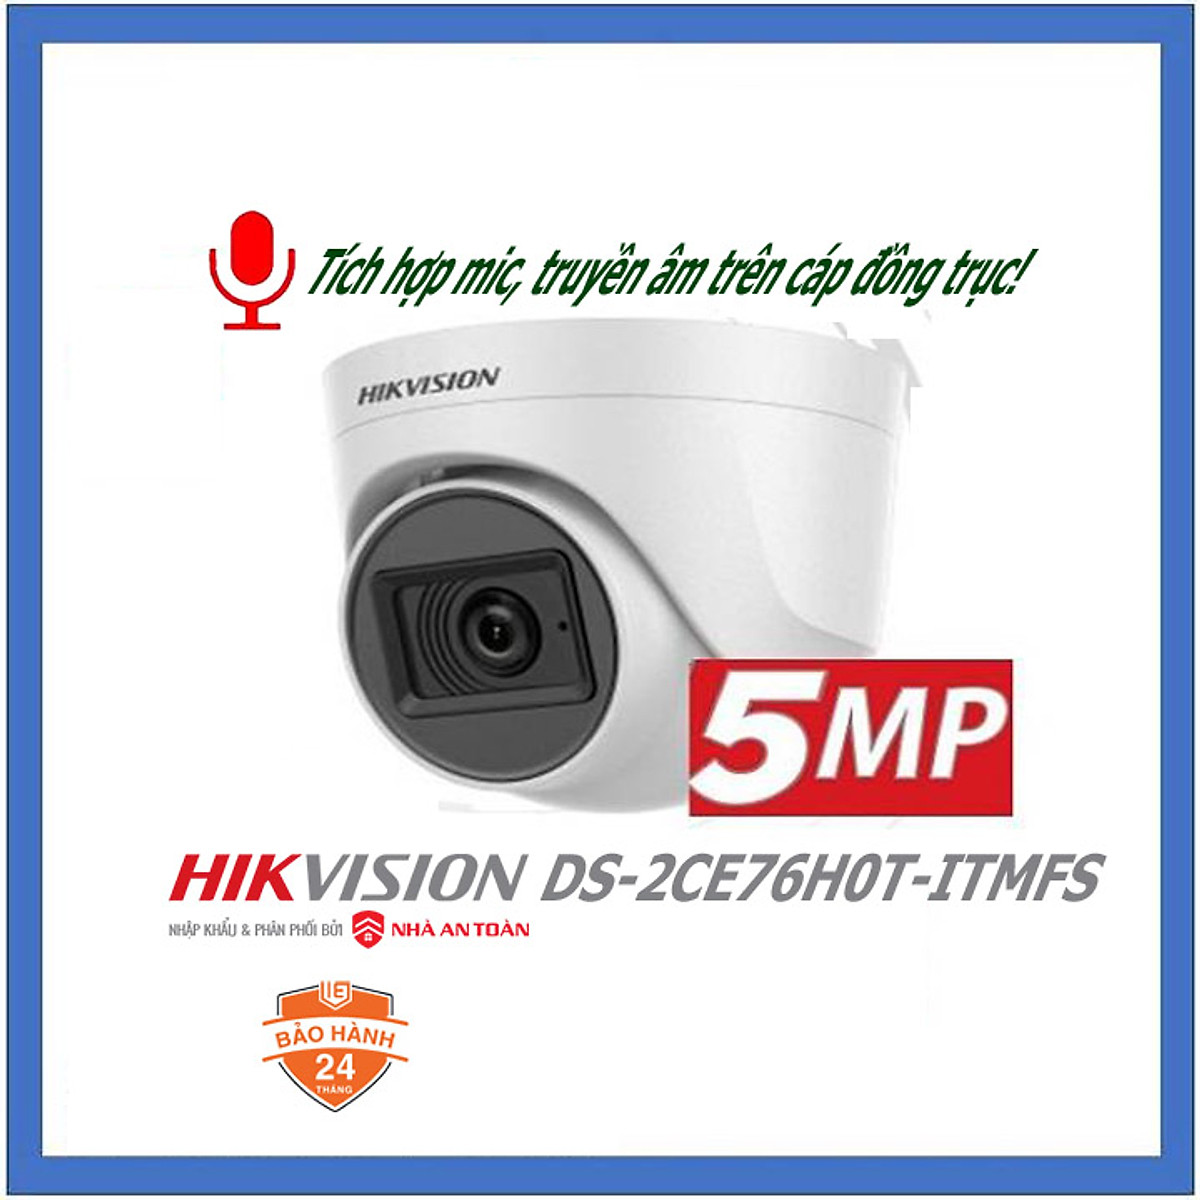 Camera Hikvision HD TVI 5.0Mp độ phân giải 2K ( 2560 x 1944 ). TÍCH HỢP MIC GHI ÂM Sử dụng với đầu ghi hình qua cáp đồng trục. Mã SP H0T S - Hàng chính hãng